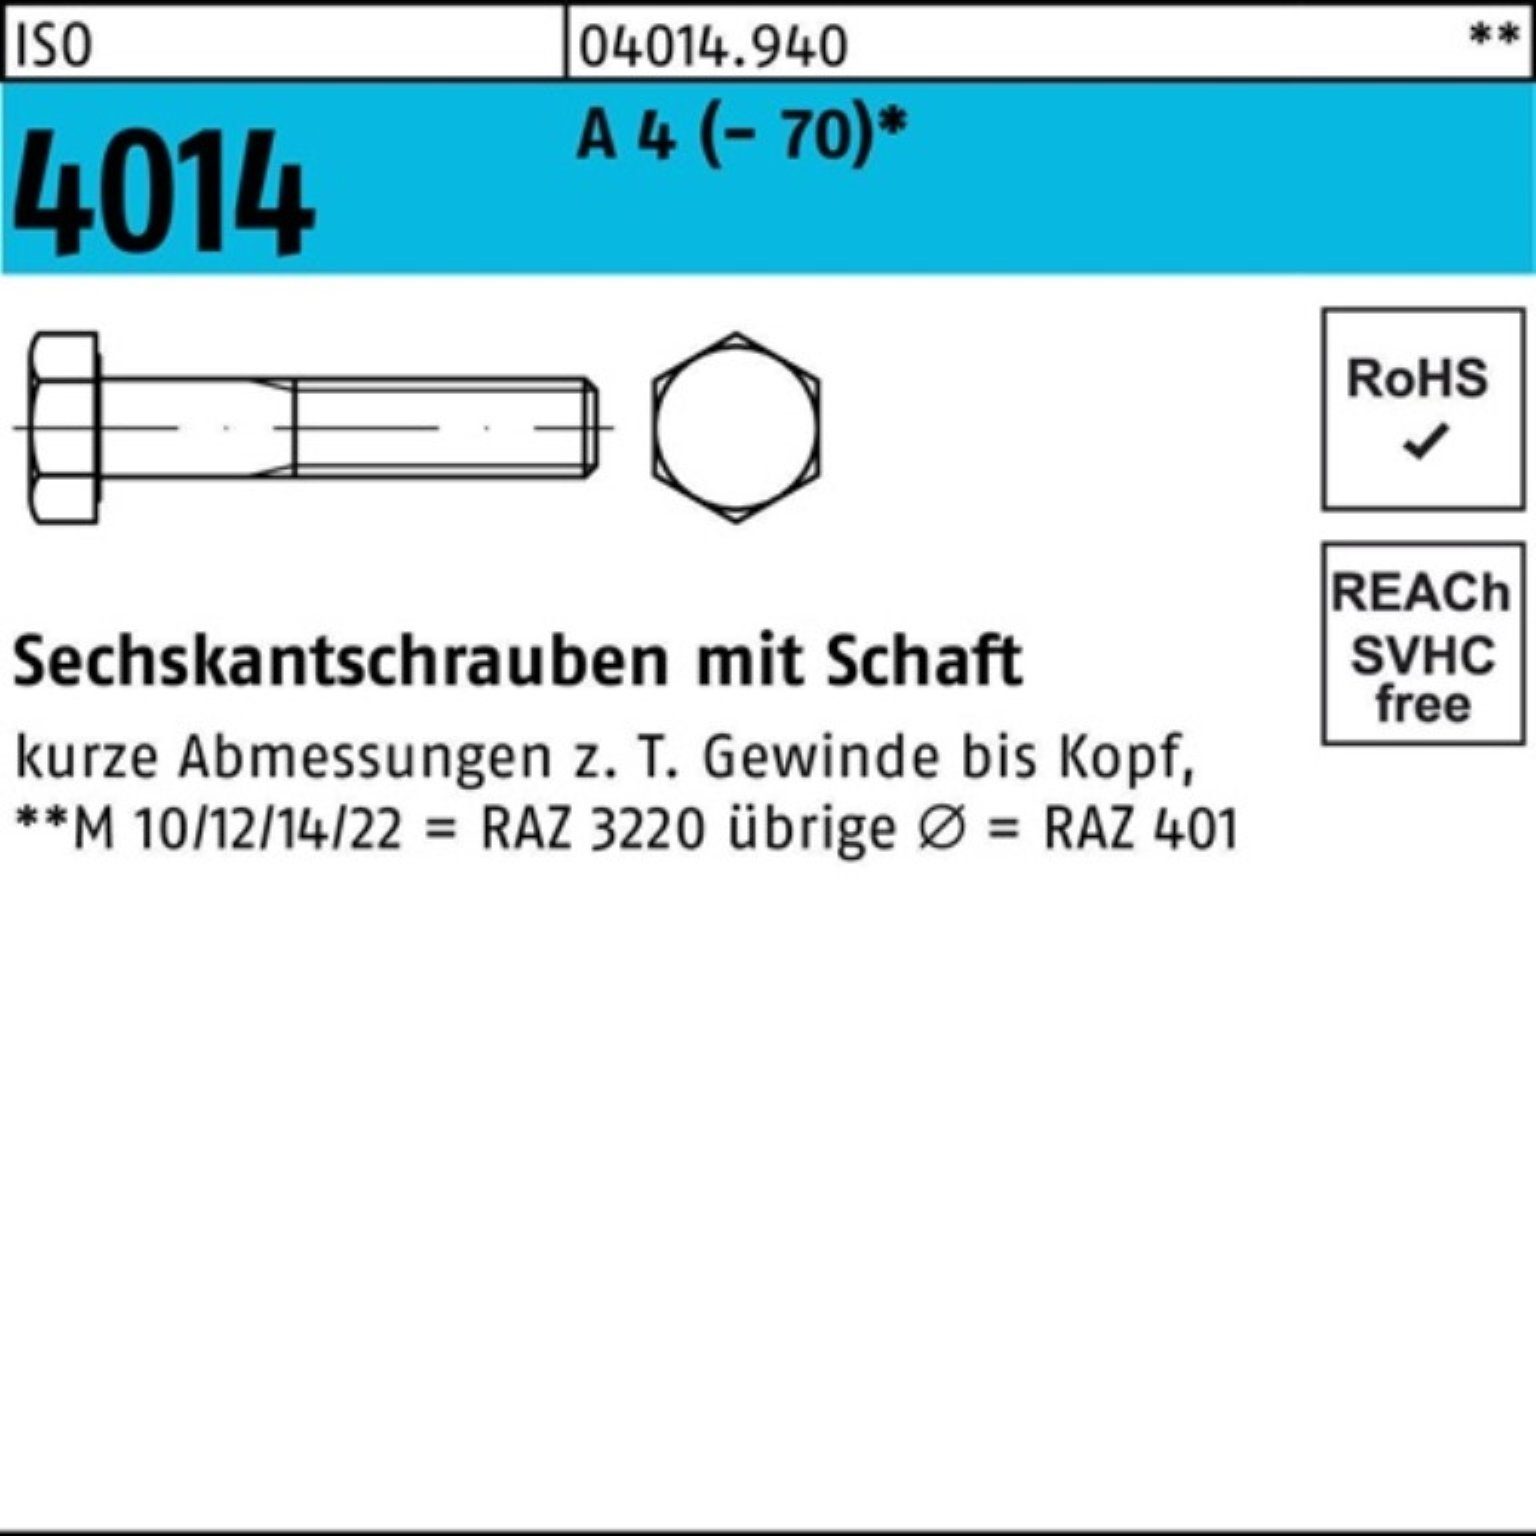 ISO 4 ISO Sechskantschraube M24x 4014 300 Bufab Pack Stück Schaft A 100er 1 Sechskantschraube